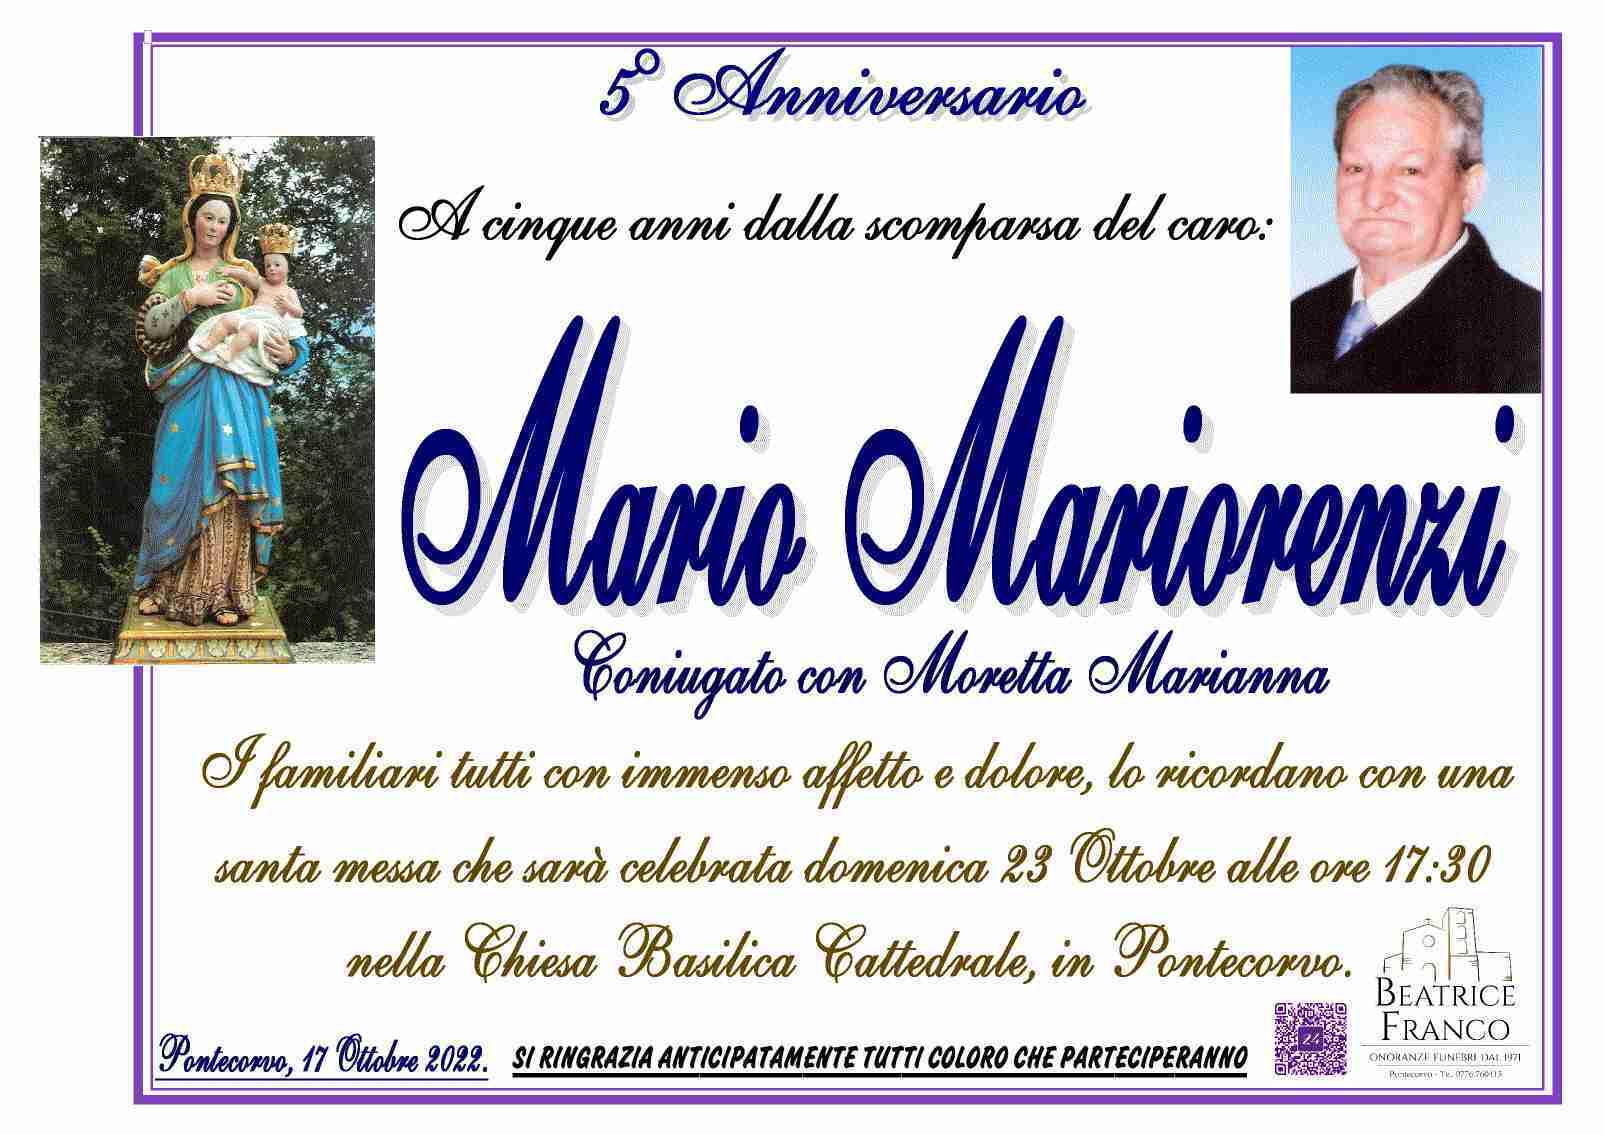 Mario Mariorenzi